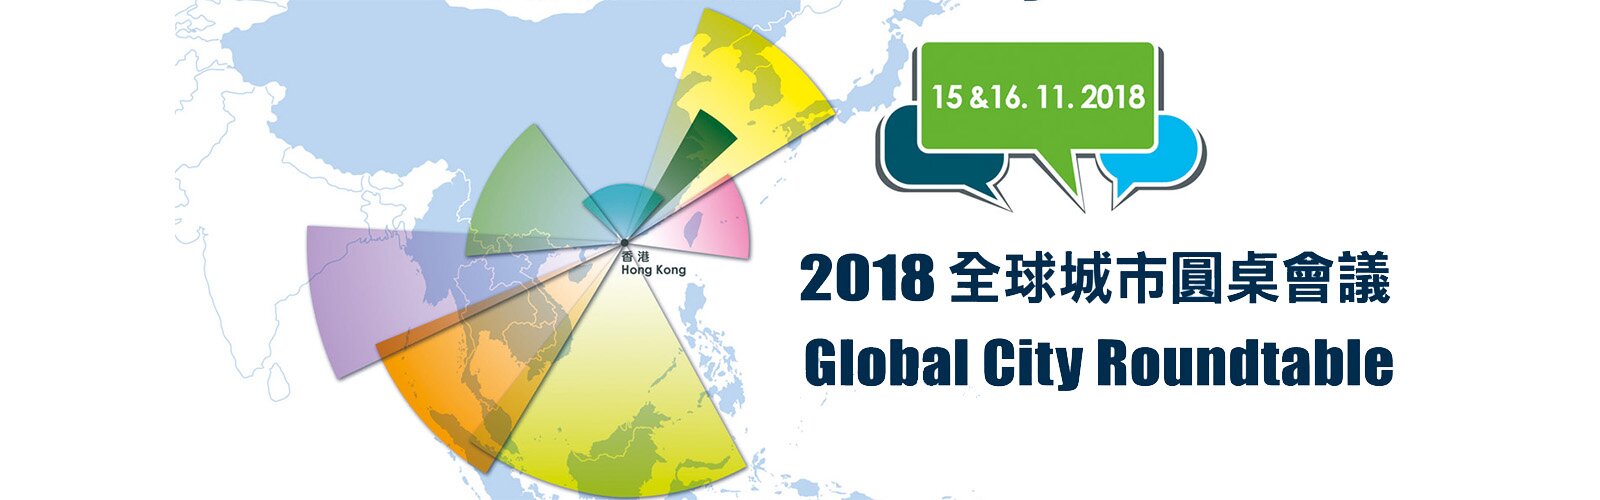 2018全球城市圆桌会议